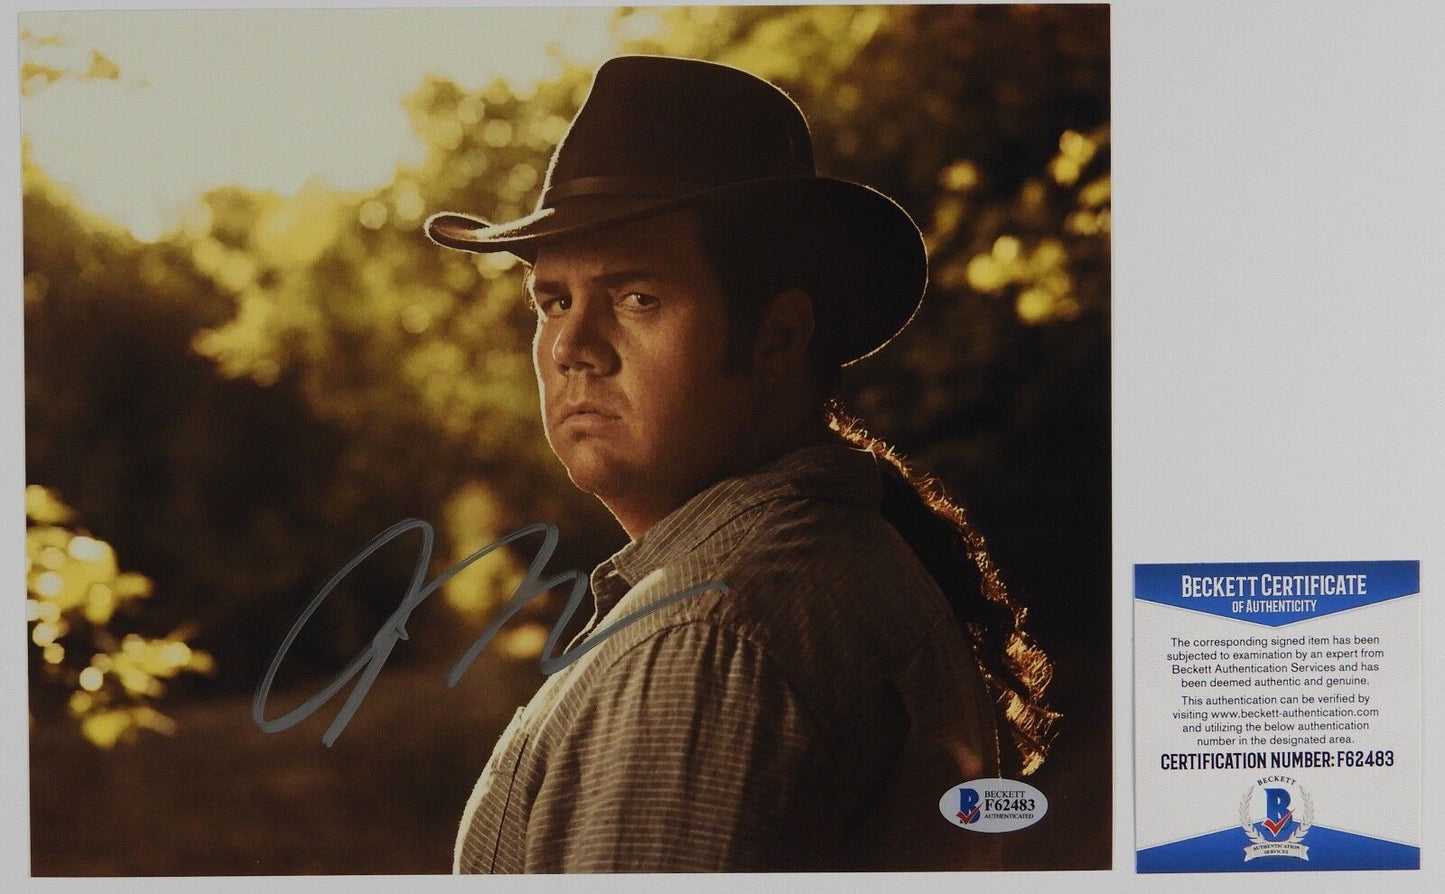 Josh McDermitt Eugene Walking Dead Autograph Signed Photo Beckett BAS 8 x 10